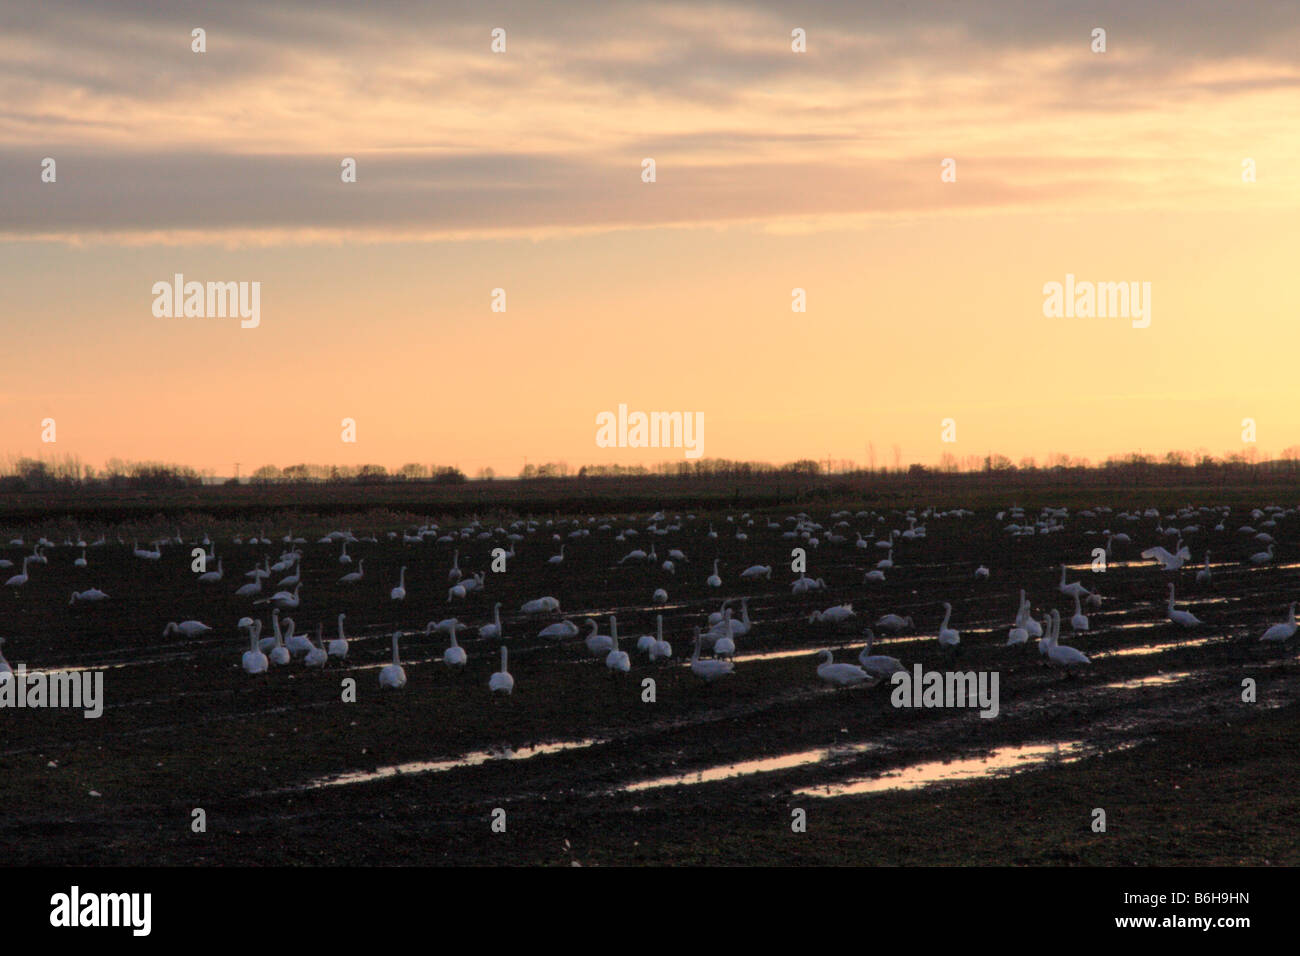 Un coucher du soleil avec fenland un troupeau de cygnes avec hivernage dans les domaines de l'alimentation Banque D'Images